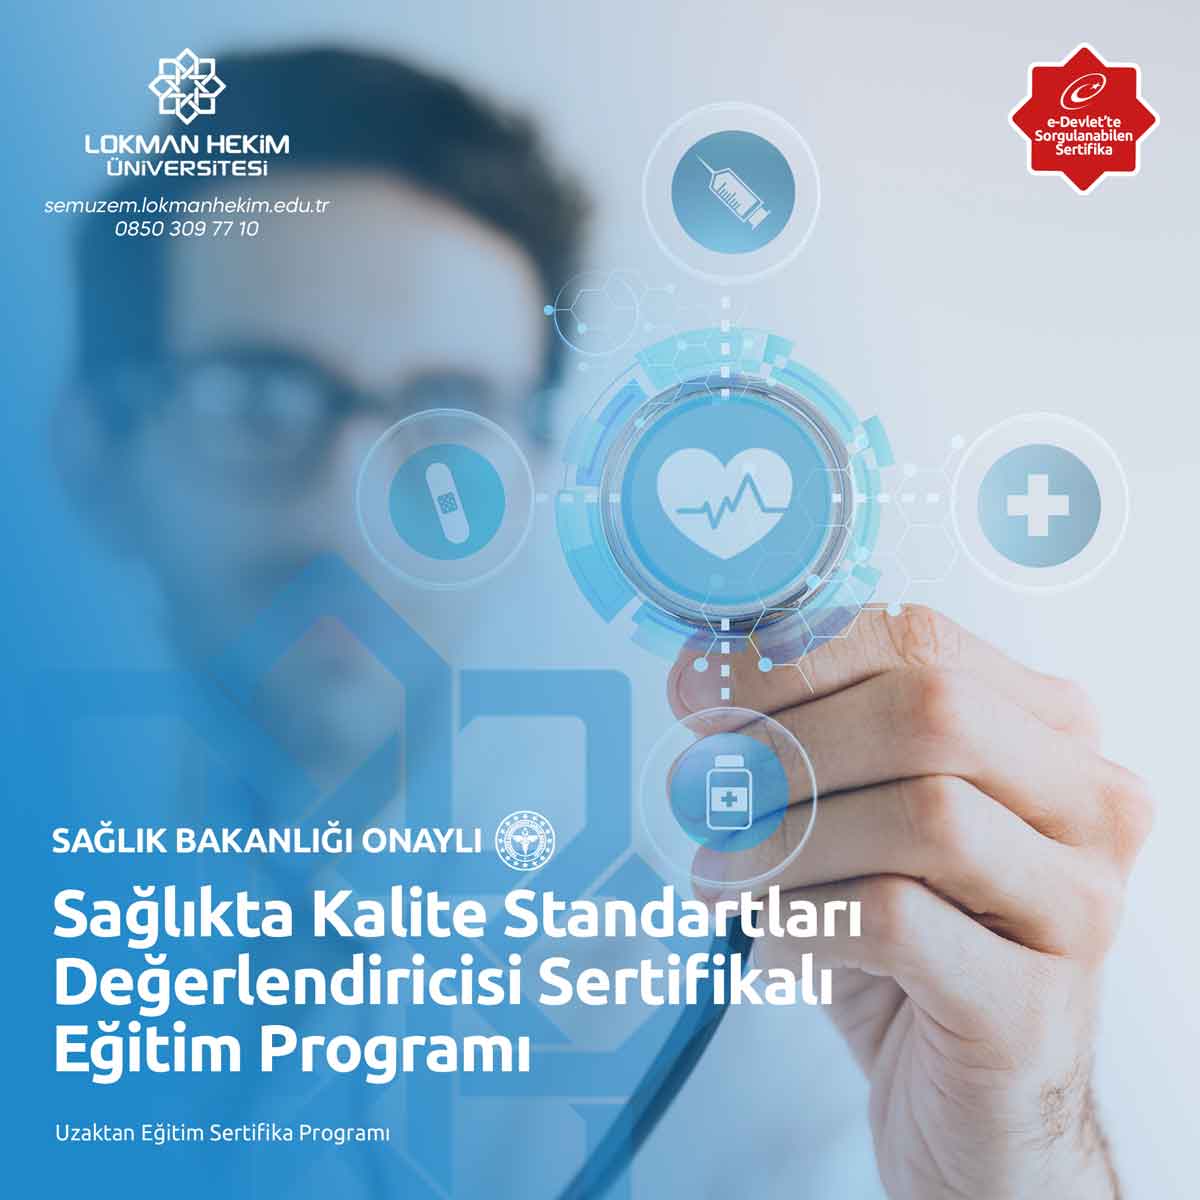 Sağlıkta Kalite Standartları Değerlendiricisi Sertifikalı Eğitim Programı